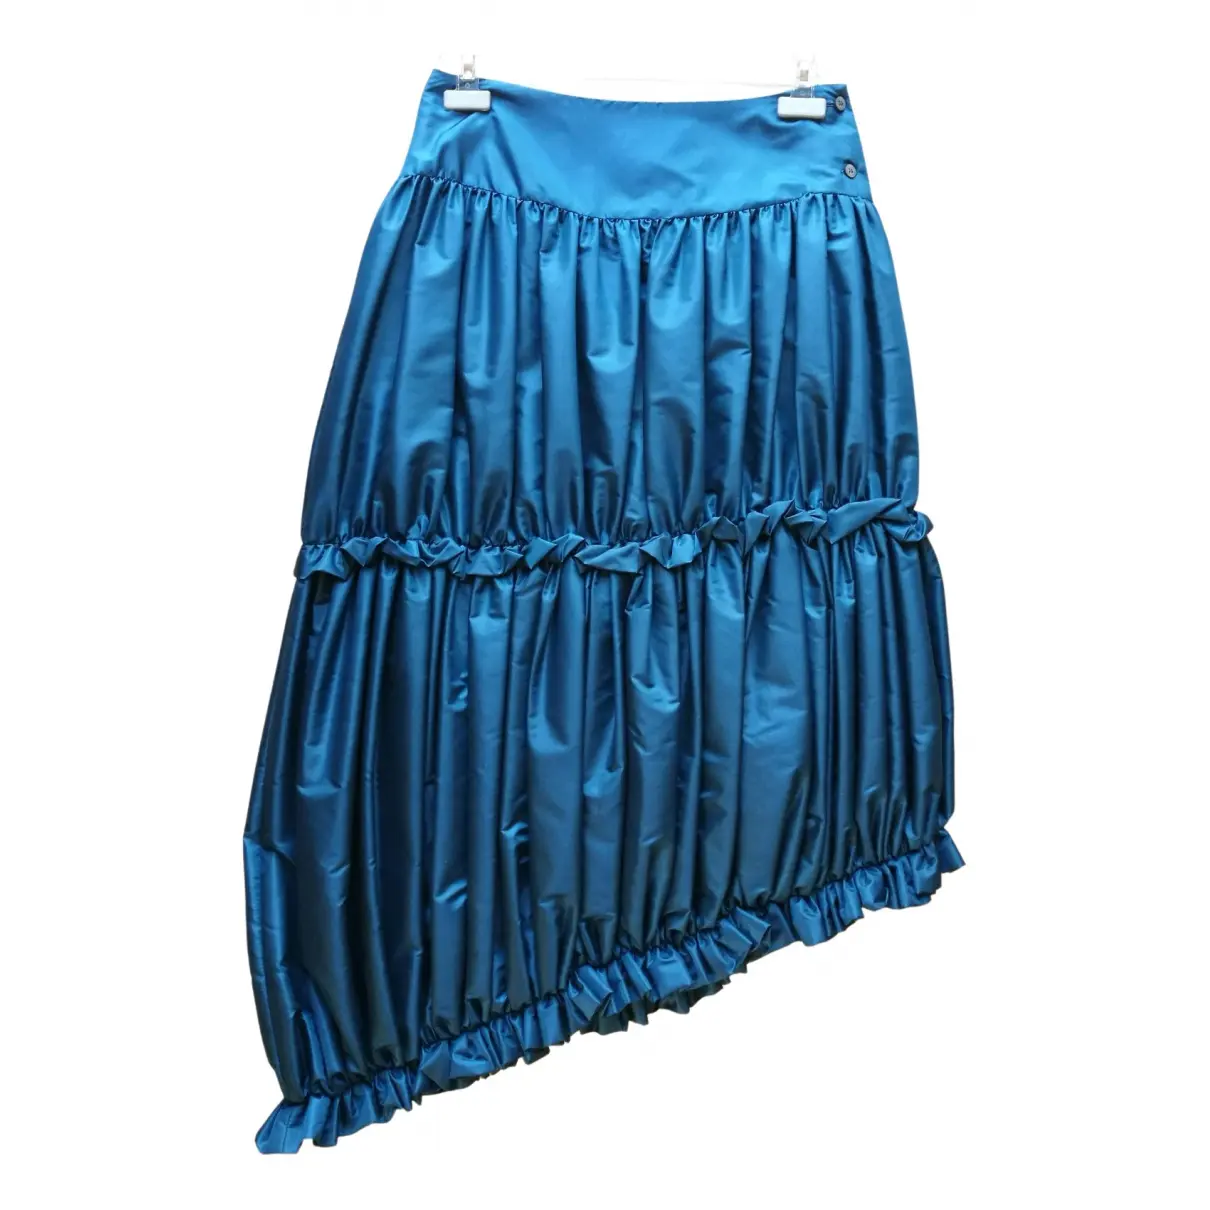 Maxi skirt Romeo Gigli - Vintage